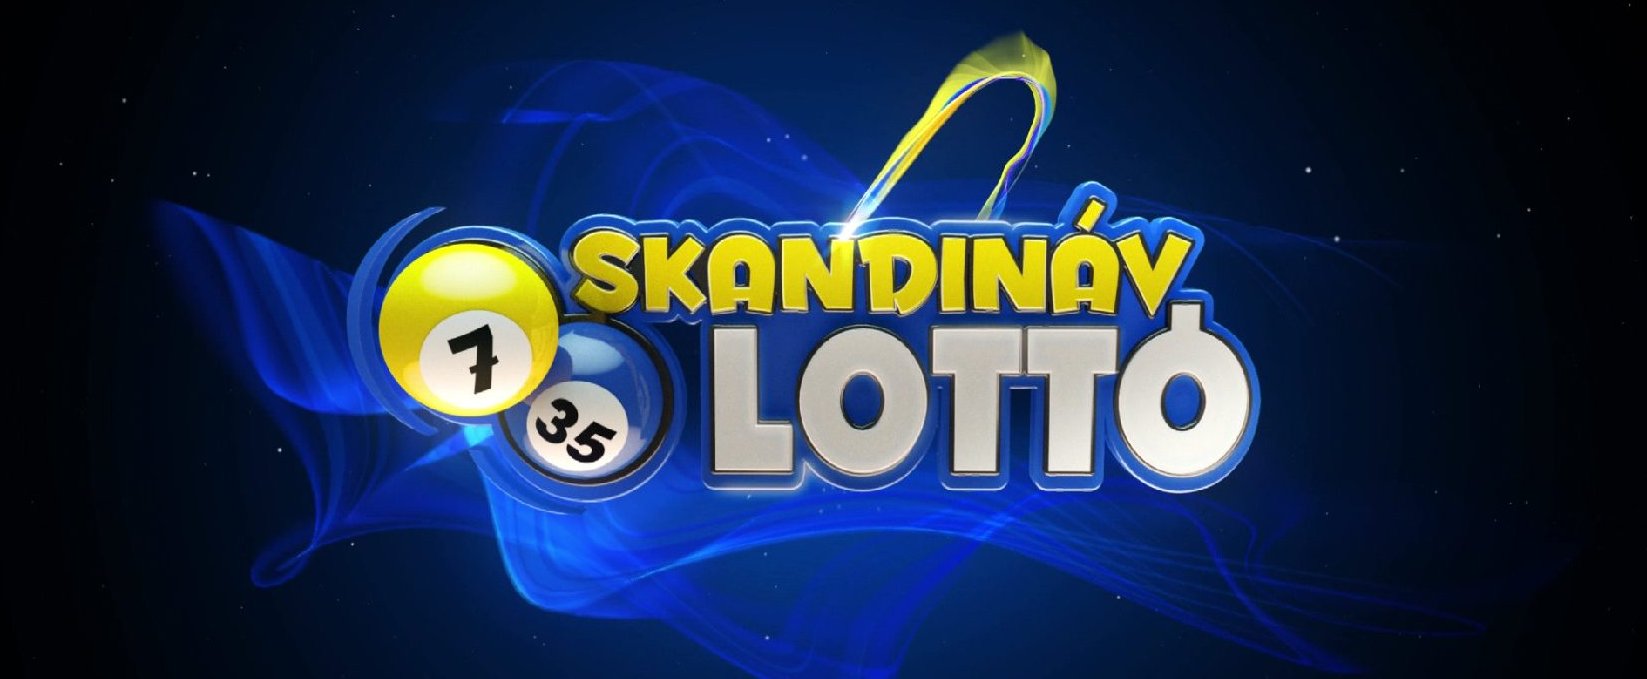 Skandináv lottó: felpörögtek a magyarok a hangzatos főnyeremény miatt – mutatjuk, milyen nyerőszámokkal lehetett zsebre vágni